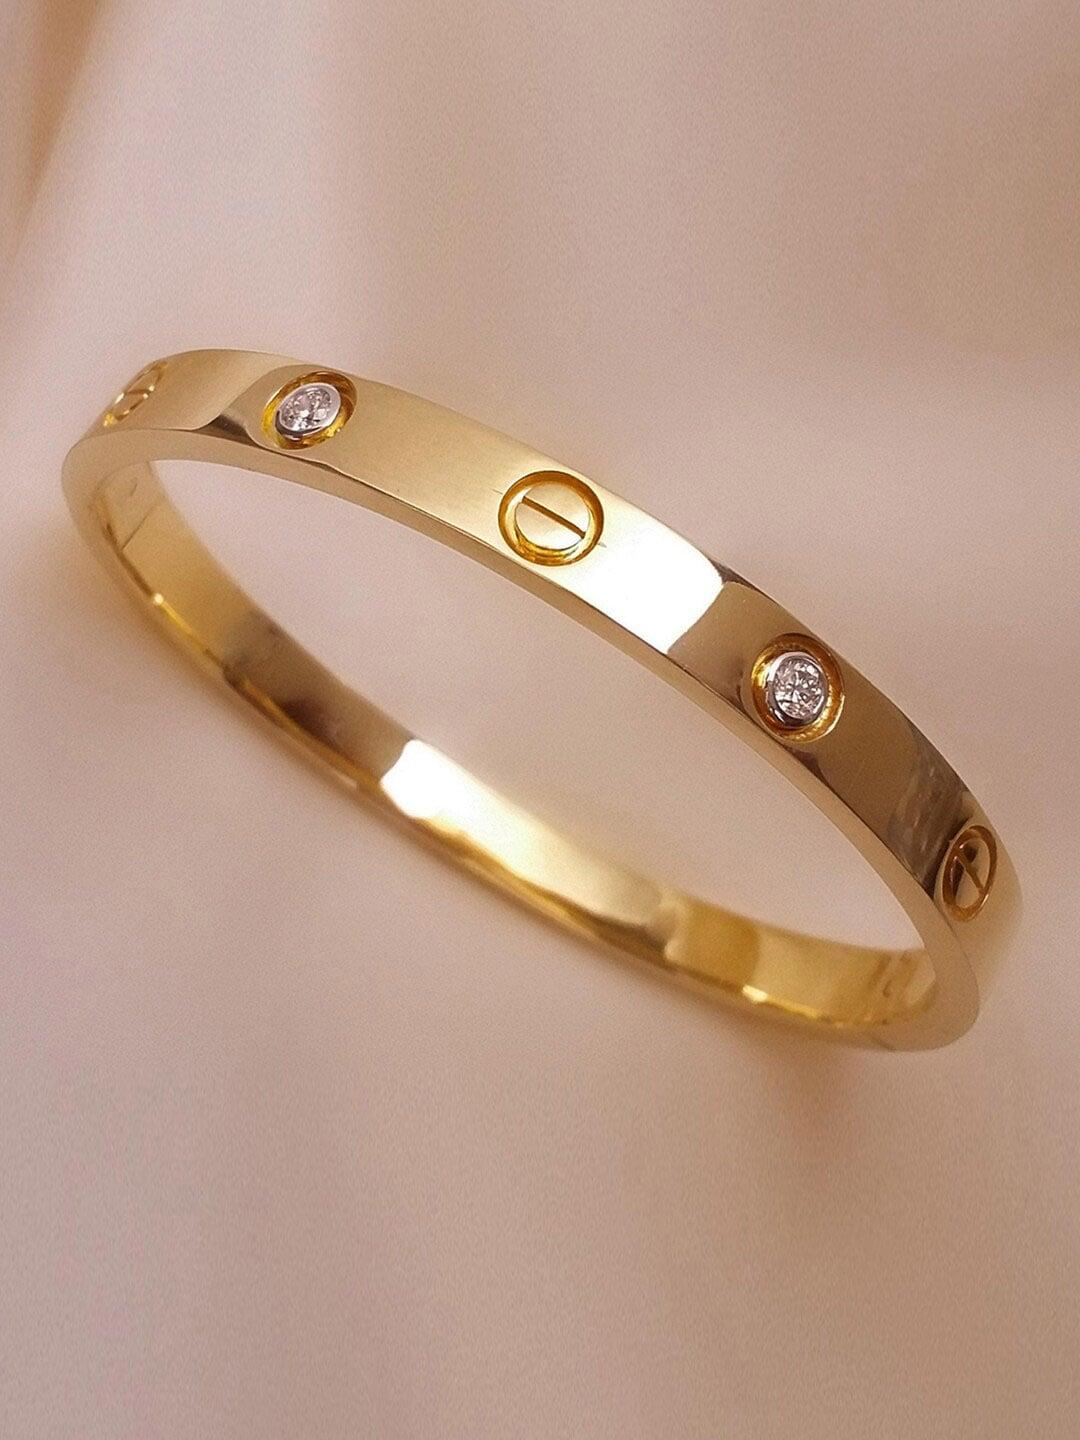 jewels-galaxy-women-gold-plated-american-diamond-bangle-style-bracelet